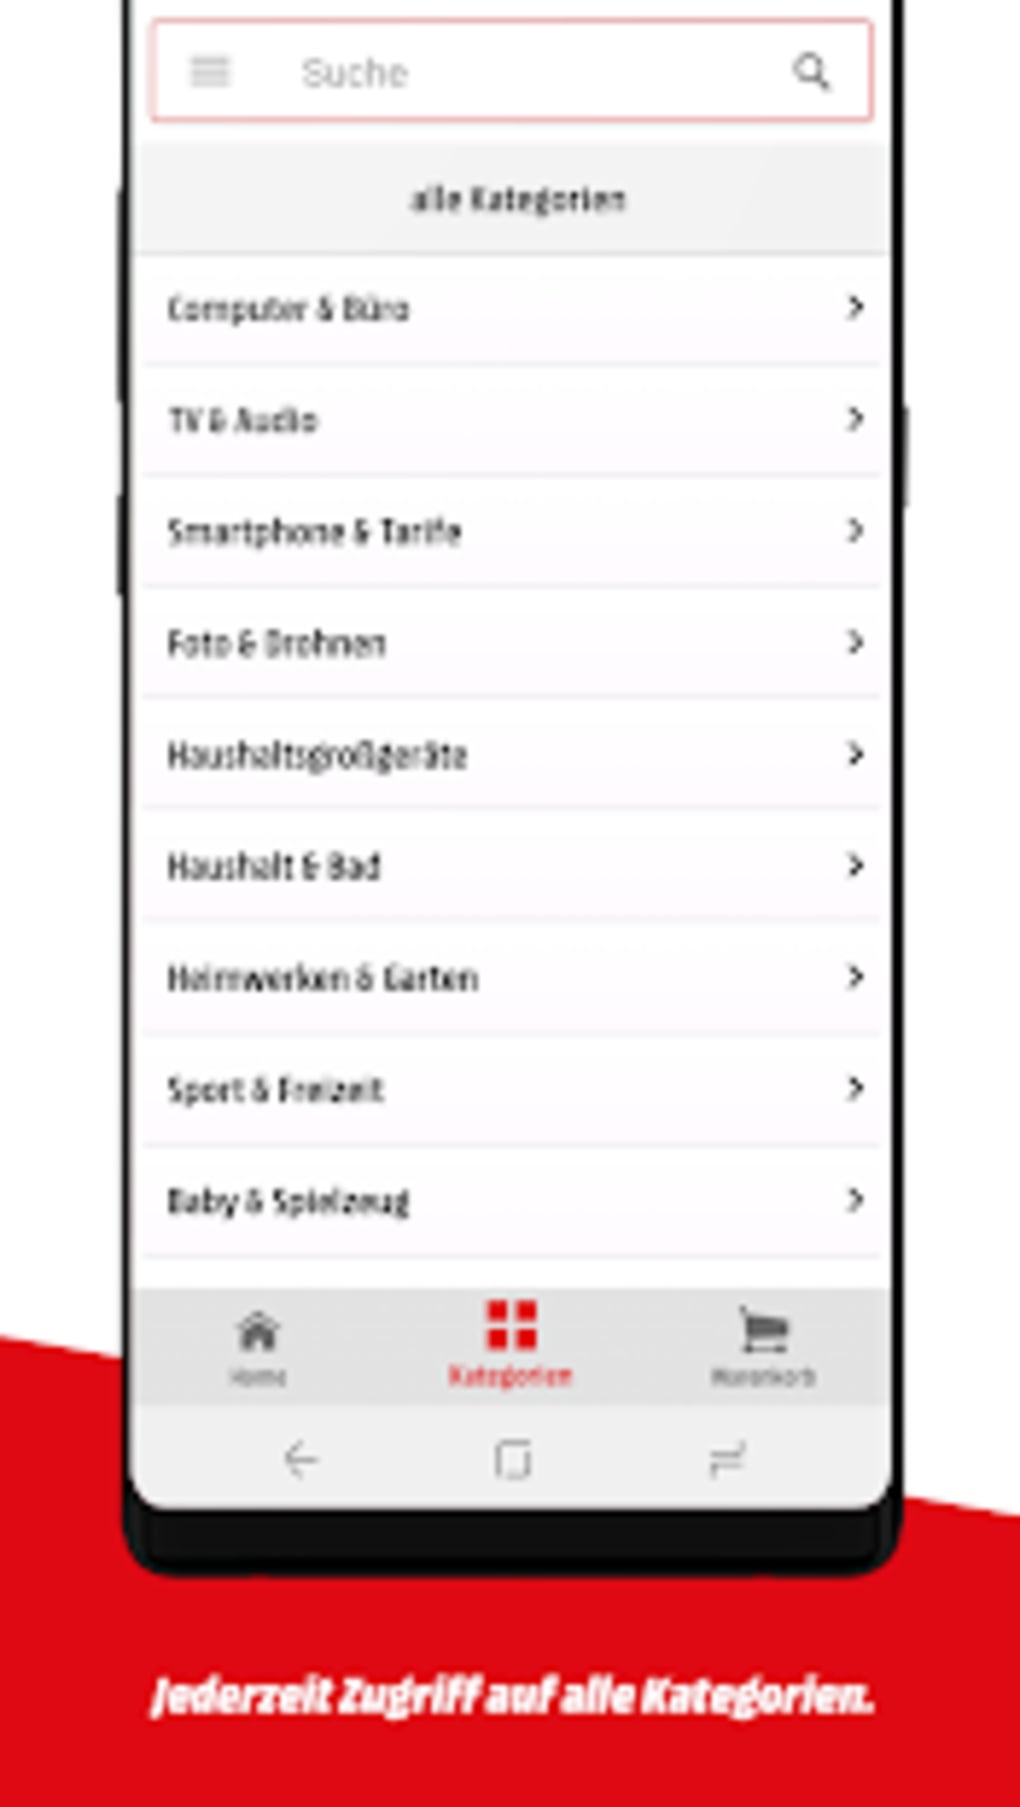 MediaMarkt Deutschland - Apps on Google Play